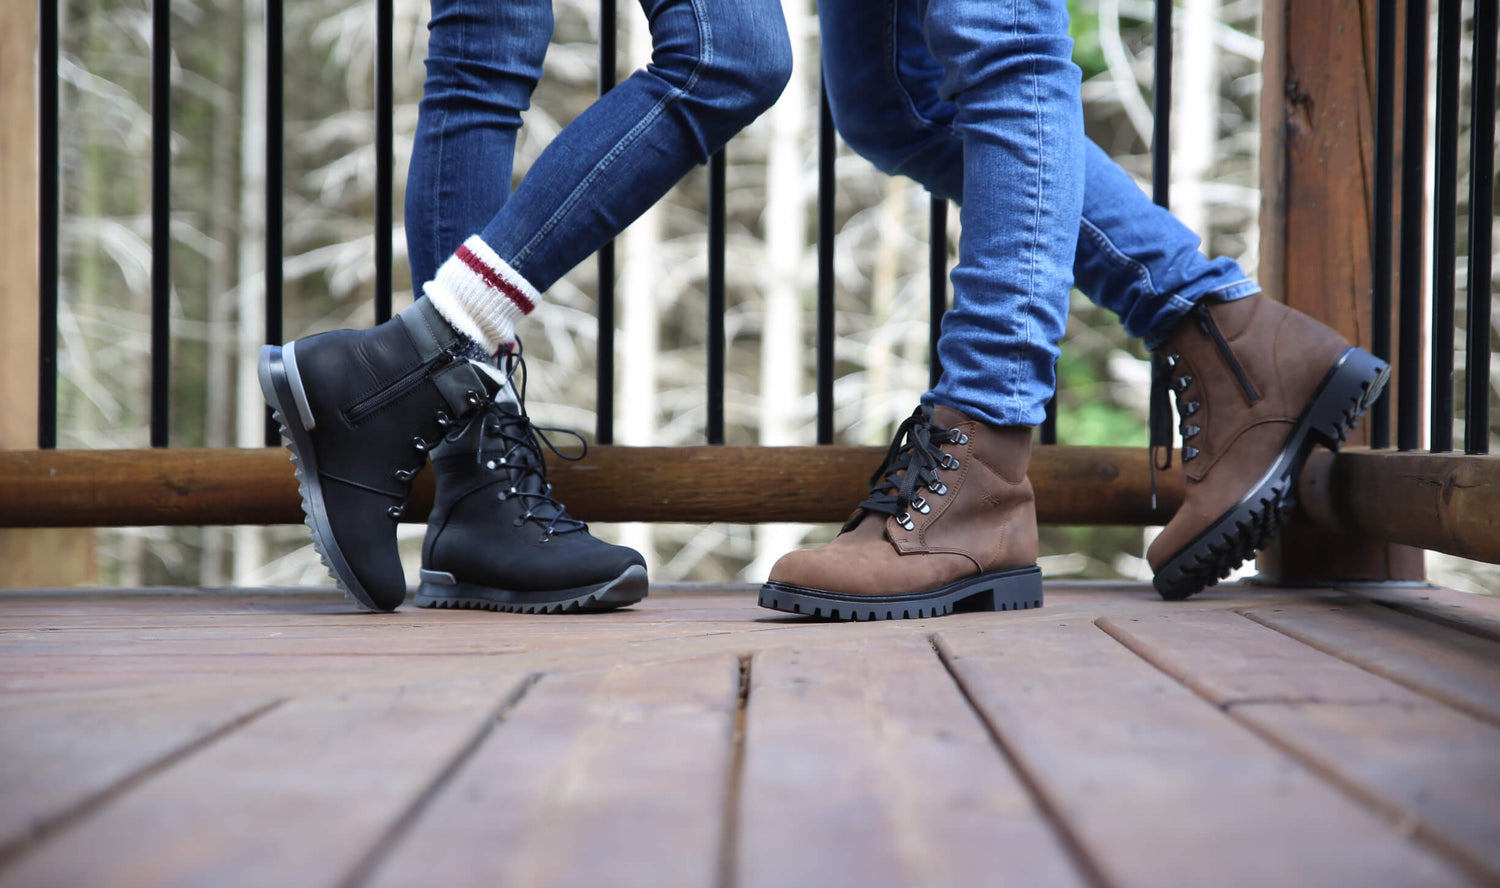 Établie à Québec depuis 1956, Martino Footwear fabrique, à la main, des bottes, des chaussures et des mocassins avec des matériaux de qualité supérieur offrant confort, chaleur, isolation, style et plus encore.